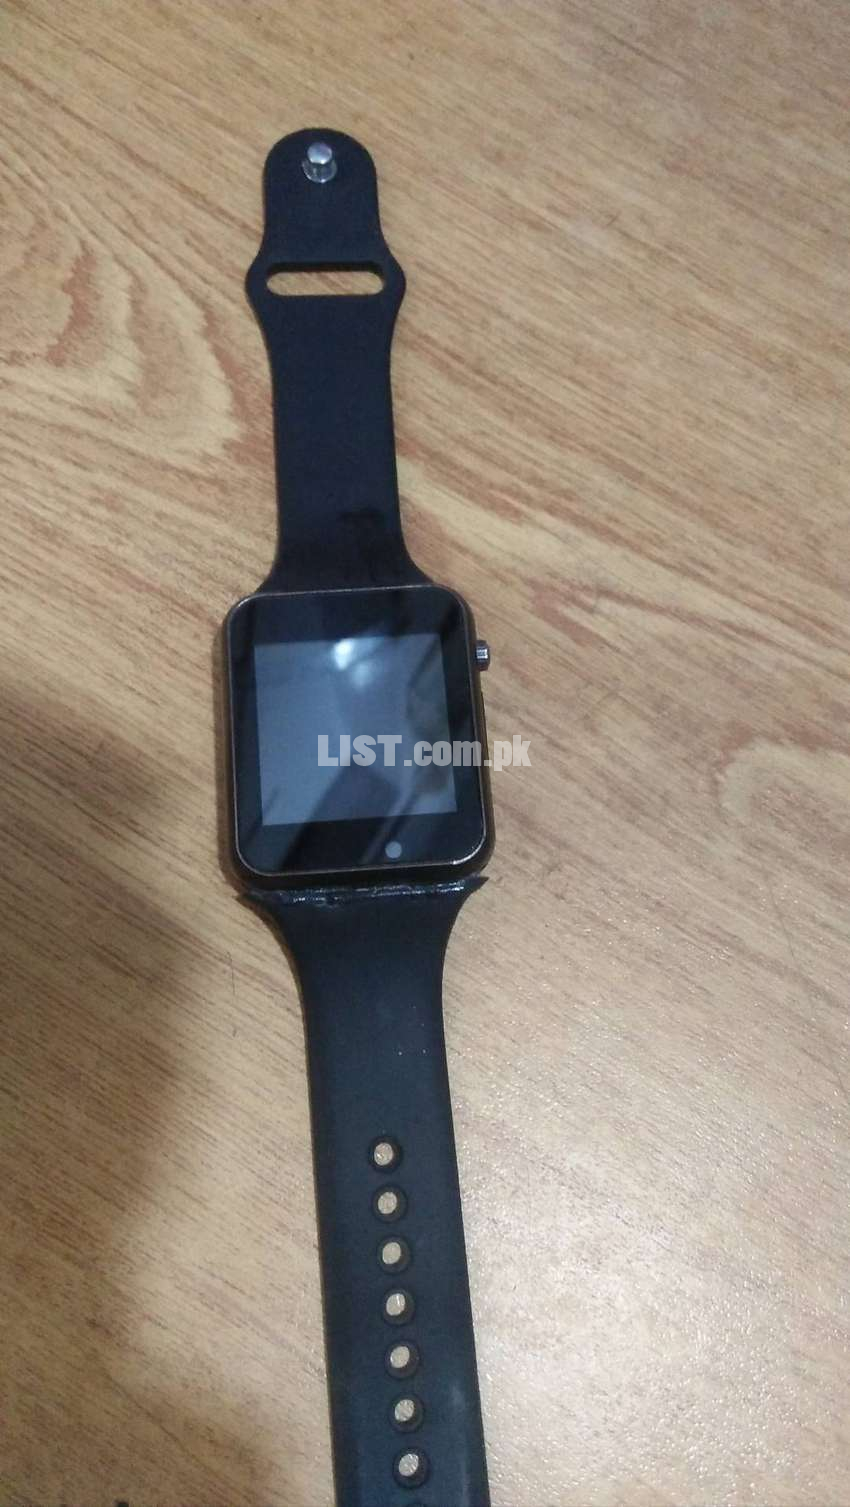 A1 Smartwatch